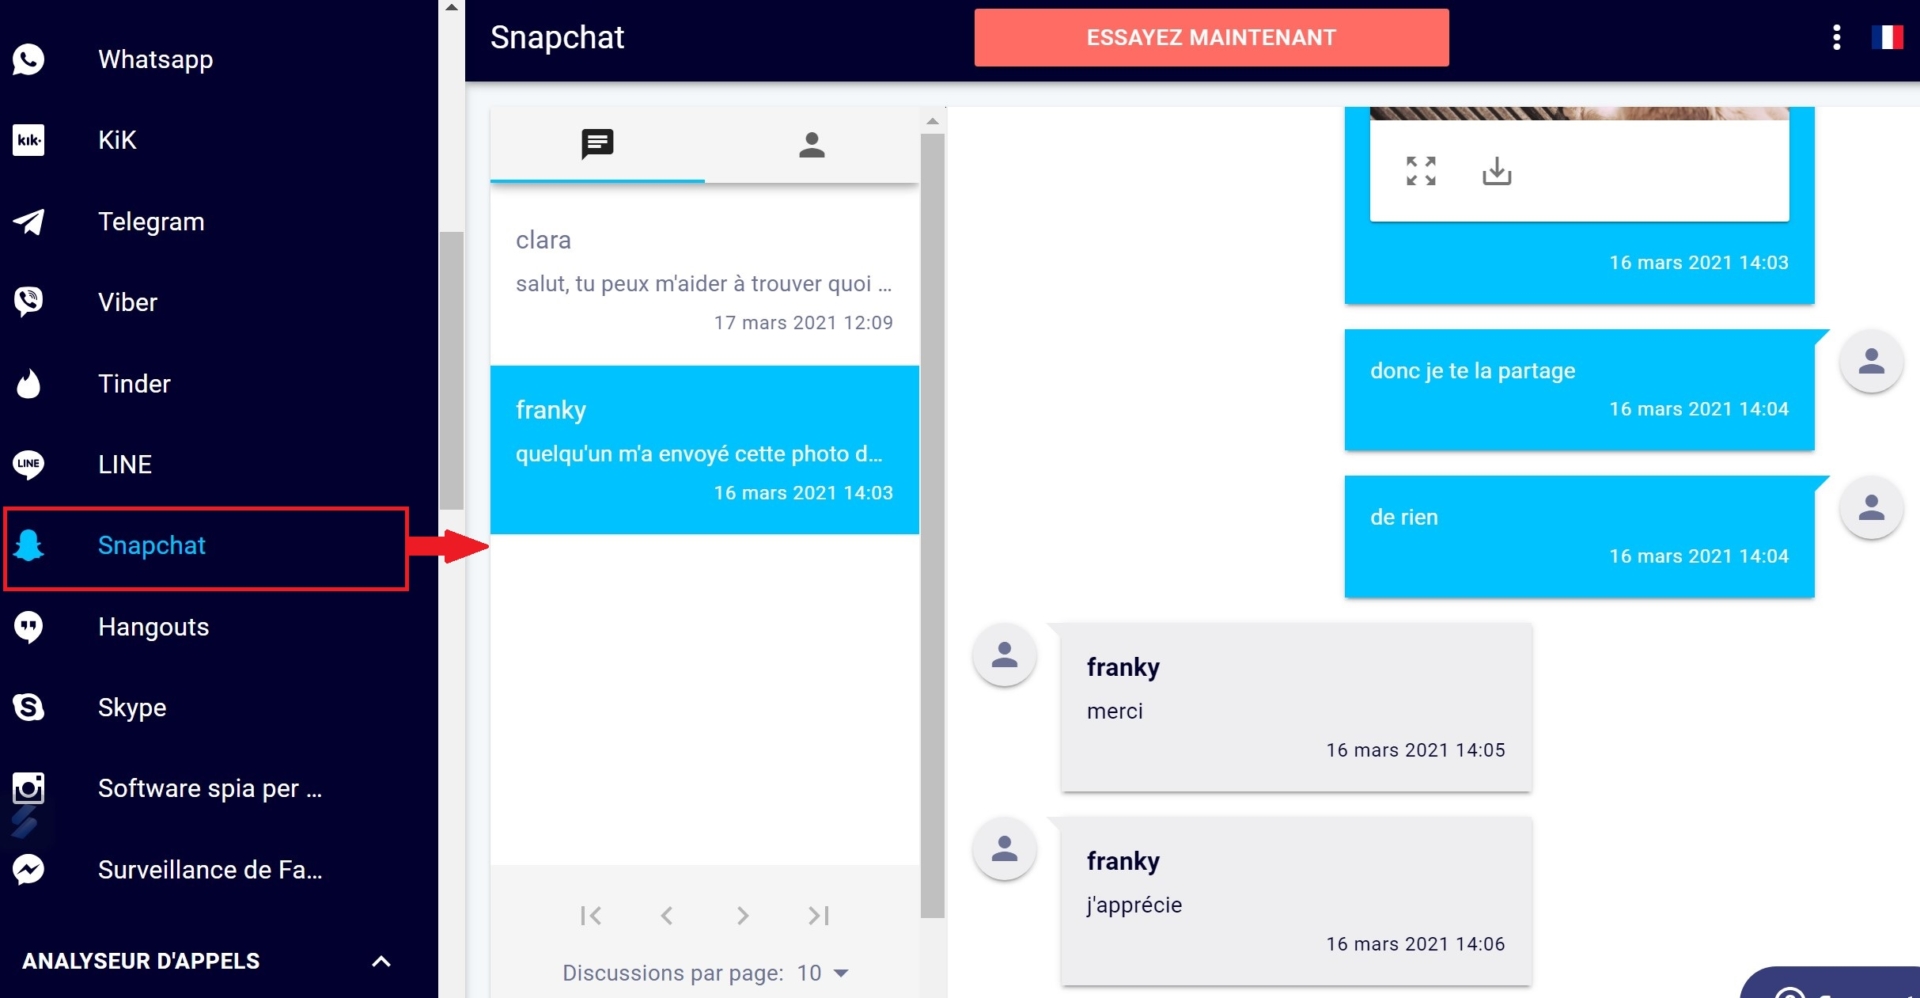  des captures d'écran des snaps et des messages de l'application Snapchat